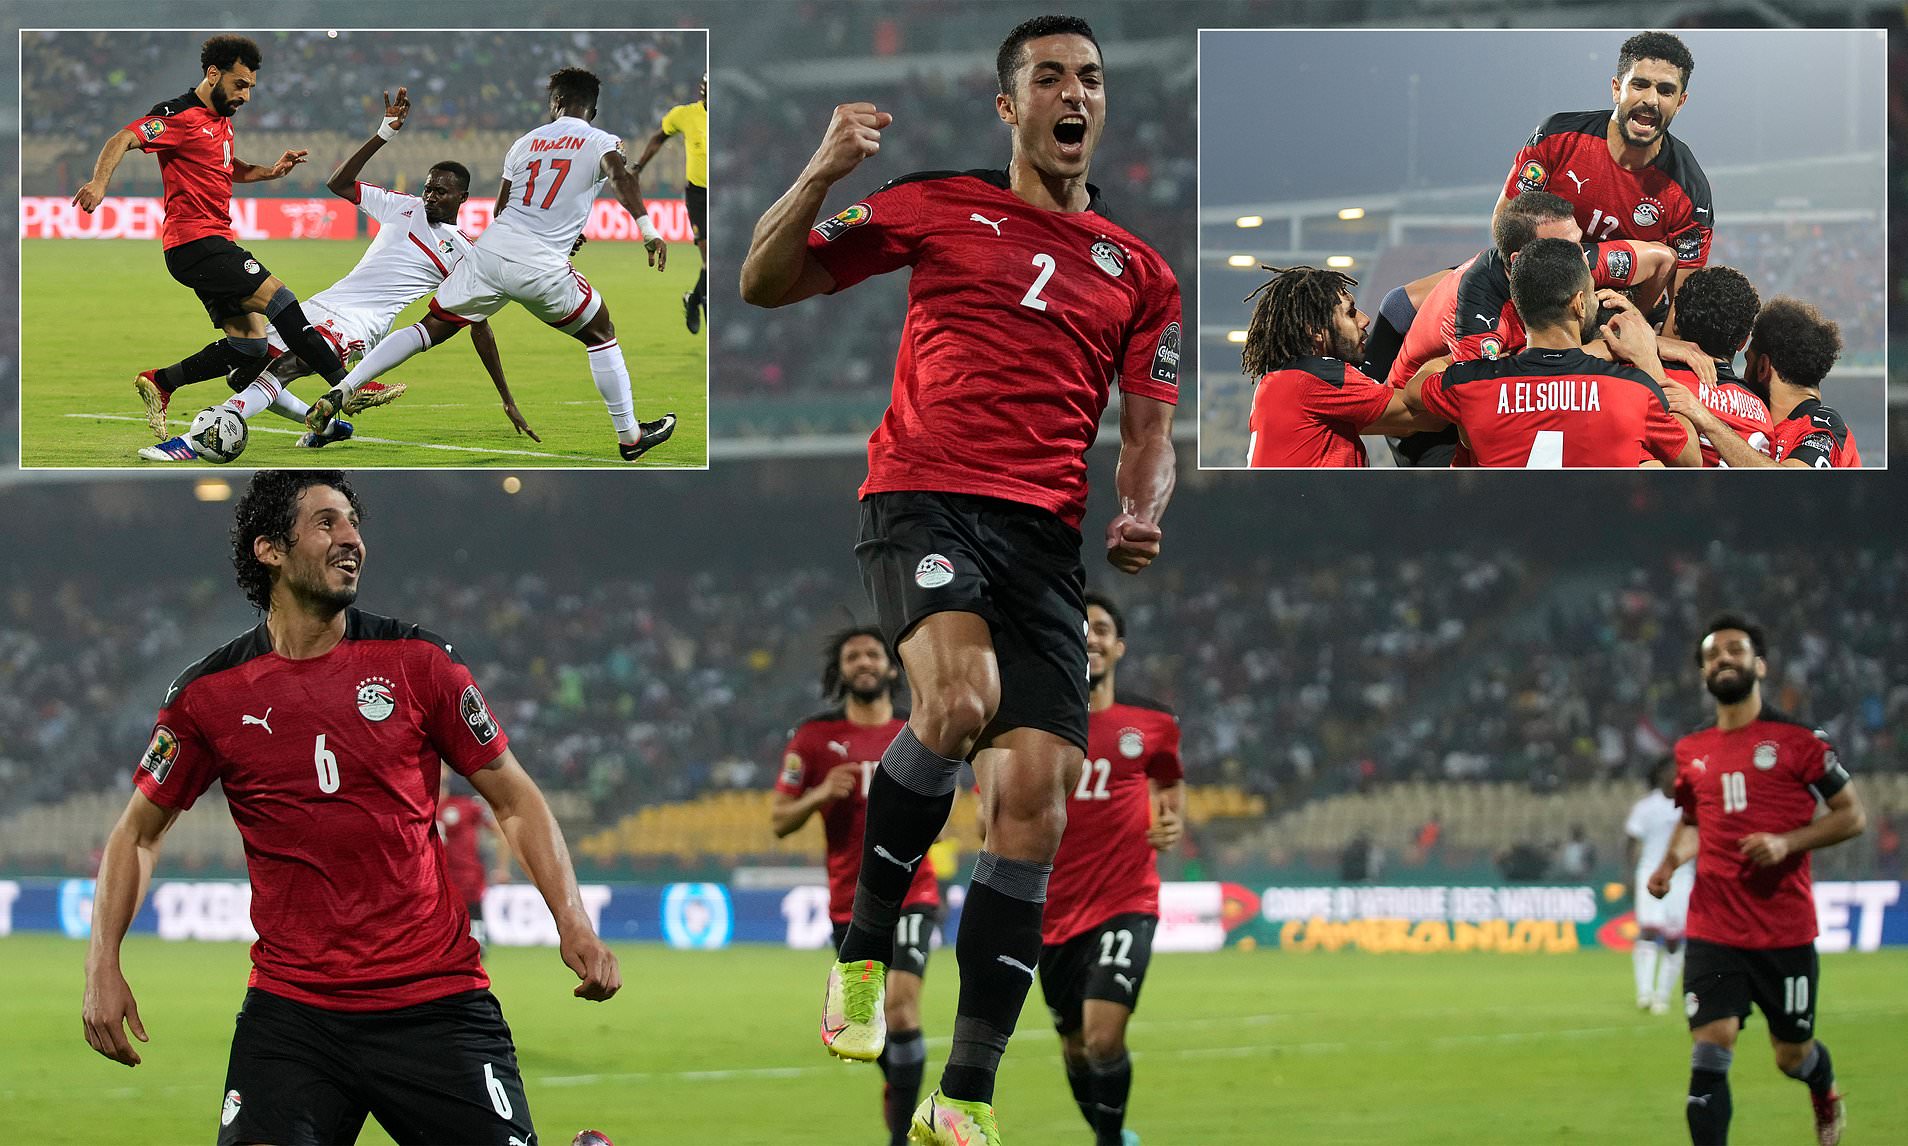 Kupa e Afrikës, Egjipti dhe Nigeria sigurojnë kualifikimin në raundin tjetër